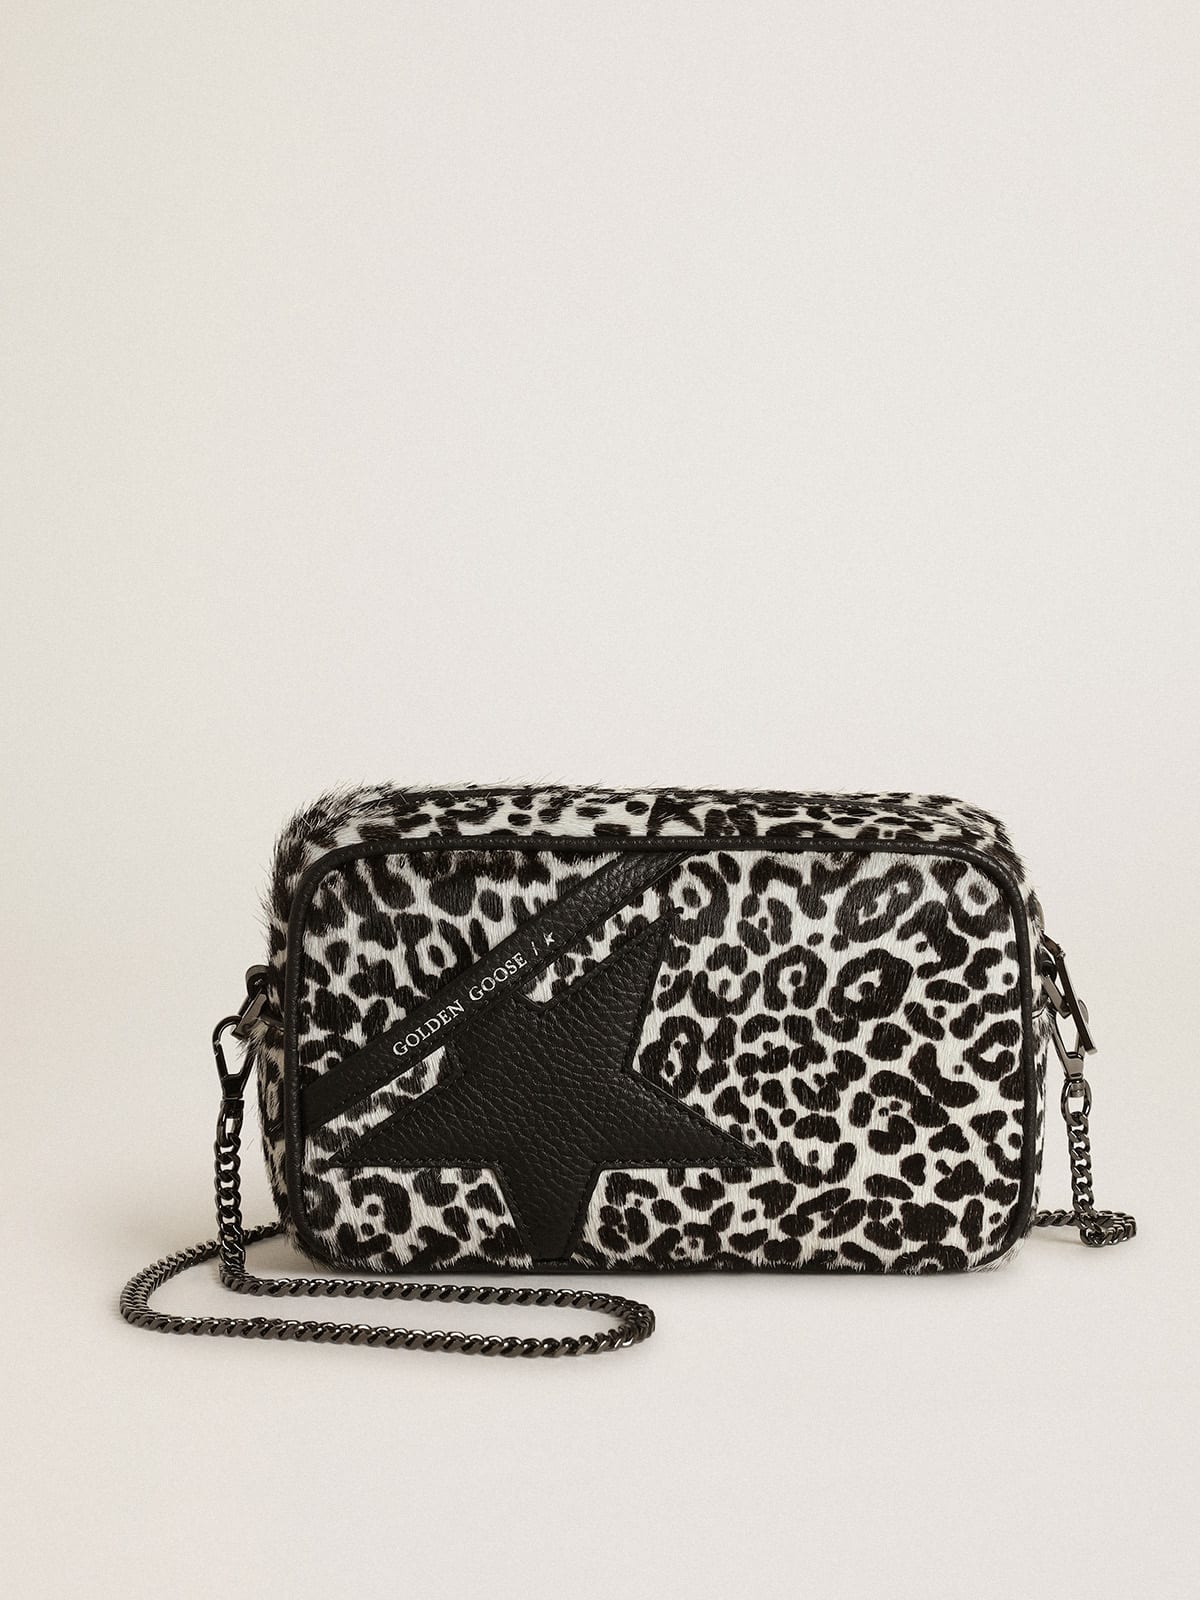 Golden Goose - Bolso Mini Star Bag de piel efecto potro con estampado leopardo color blanco y negro y estrella de piel negra in 